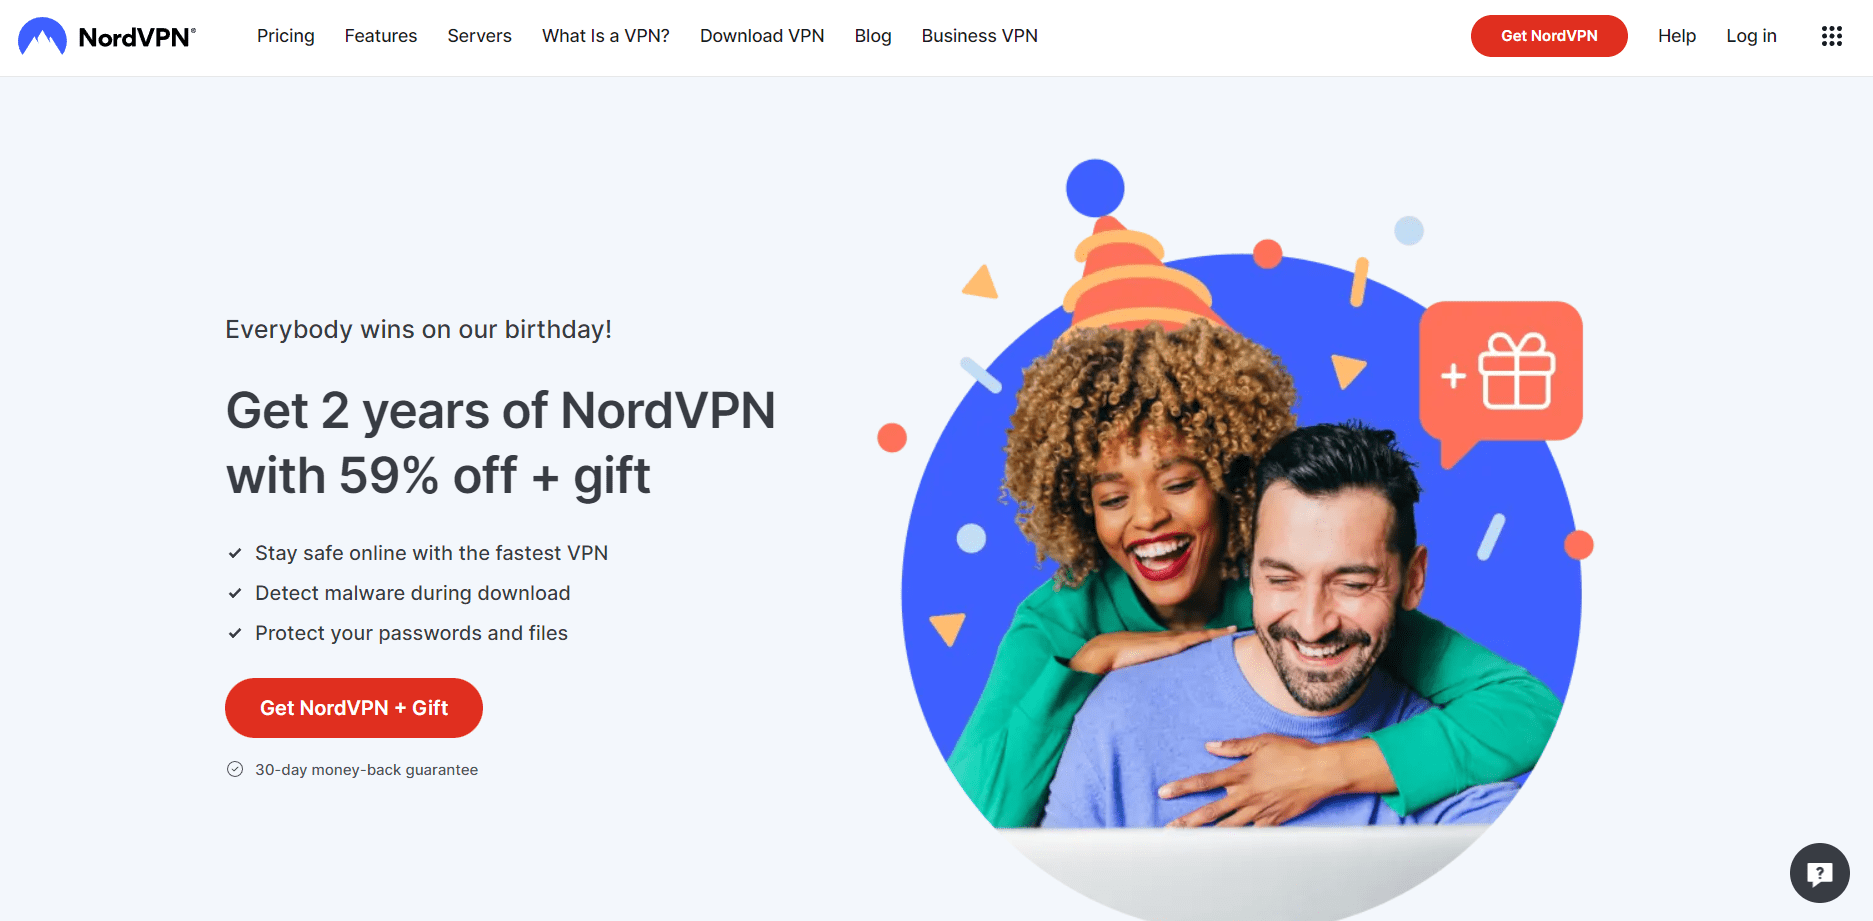 NordVPN Overview